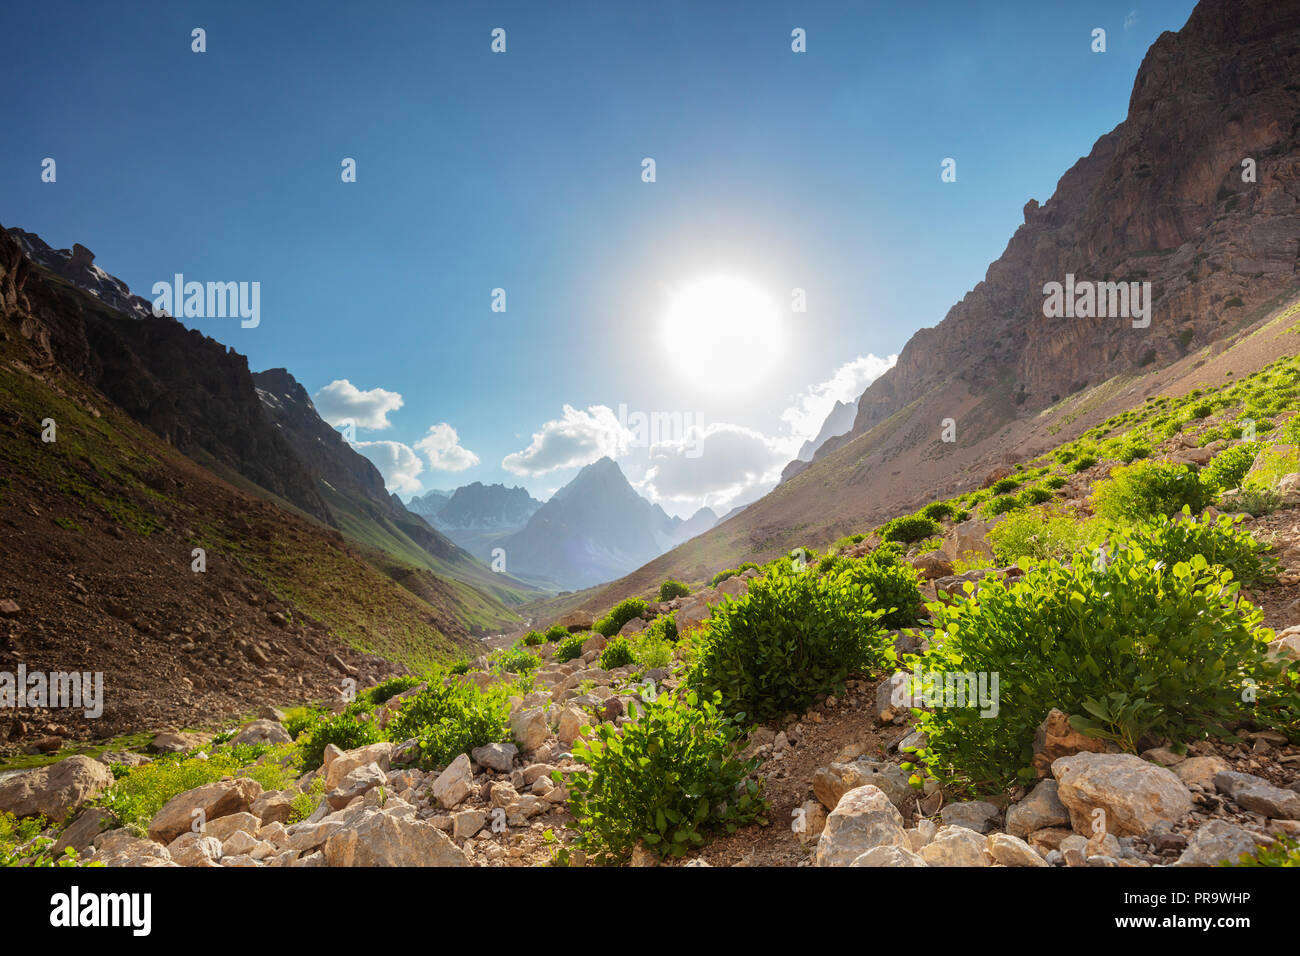 Zentralasien, Tadschikistan, Ventilator Berge, wilde Minze in den Bergen Stockfoto